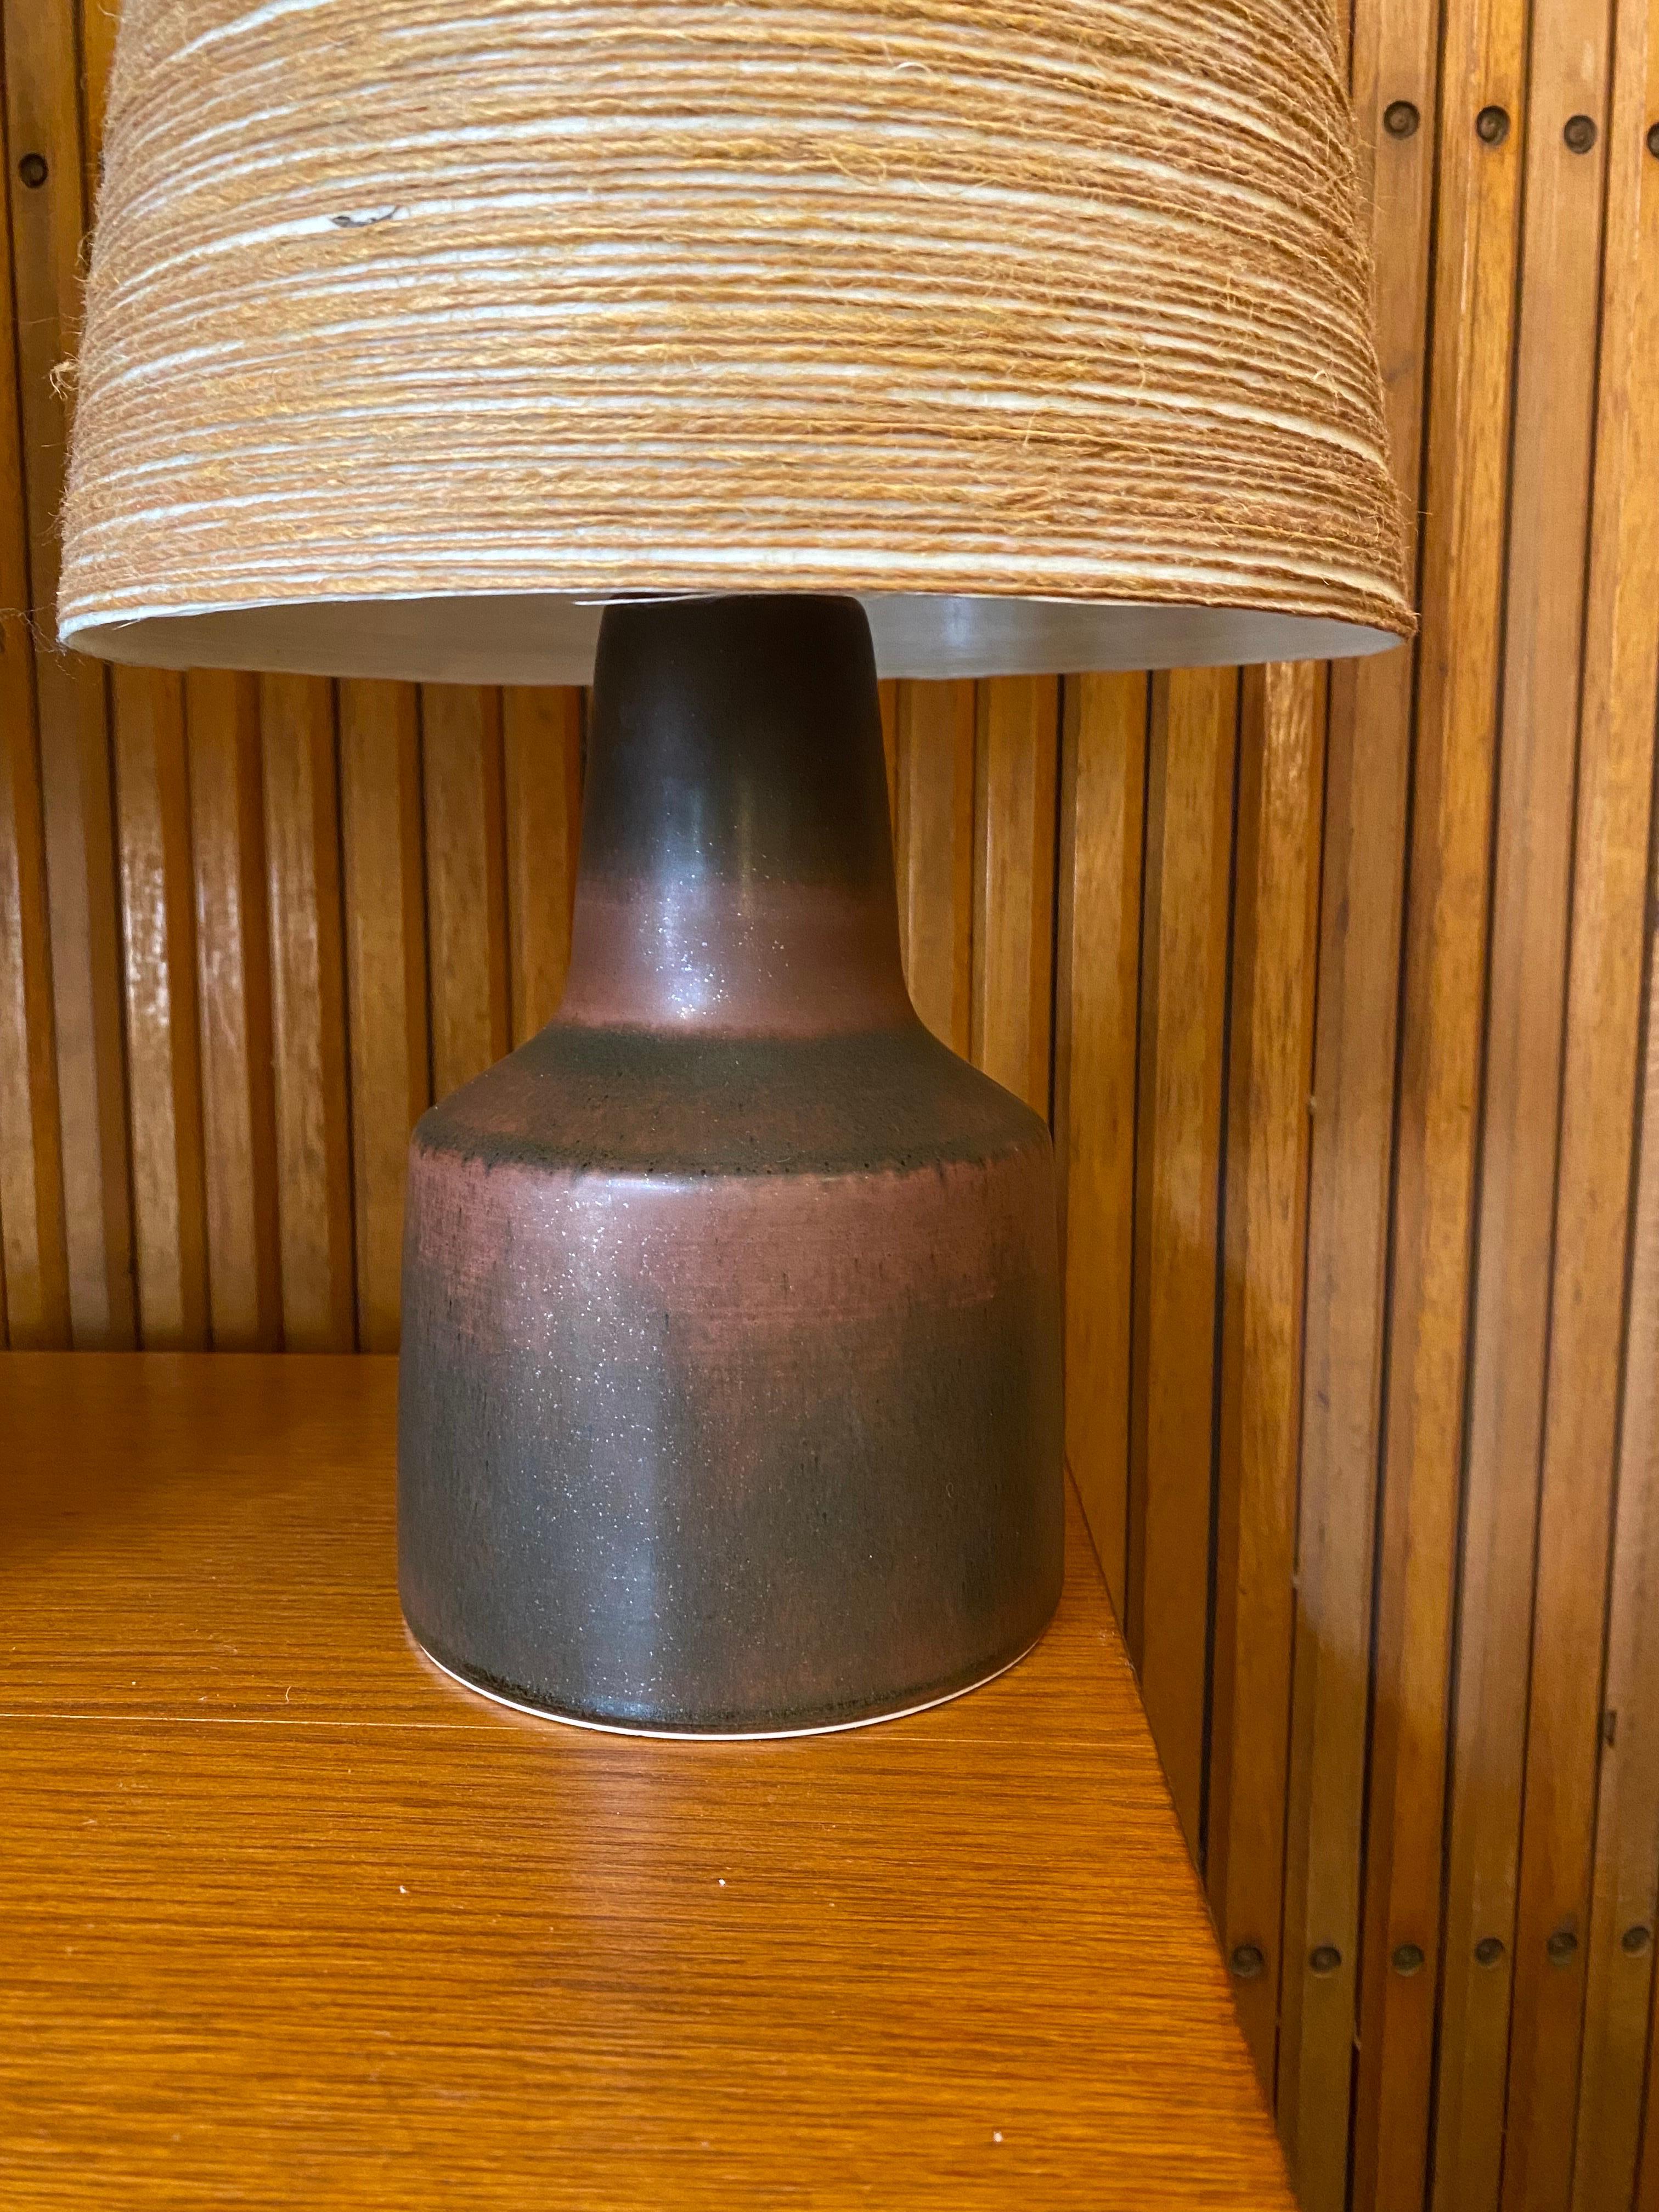 Ein Paar Lotte und Gunnar Bostlund Tischlampen mit ihren Originalschirmen!  Fiberglas mit umwickelter Schnur gibt eine erstaunliche Qualität des Lichts!  Es ist immer ein Vorteil, wenn man sie mit ihren ursprünglichen Farbtönen findet!  Keramische